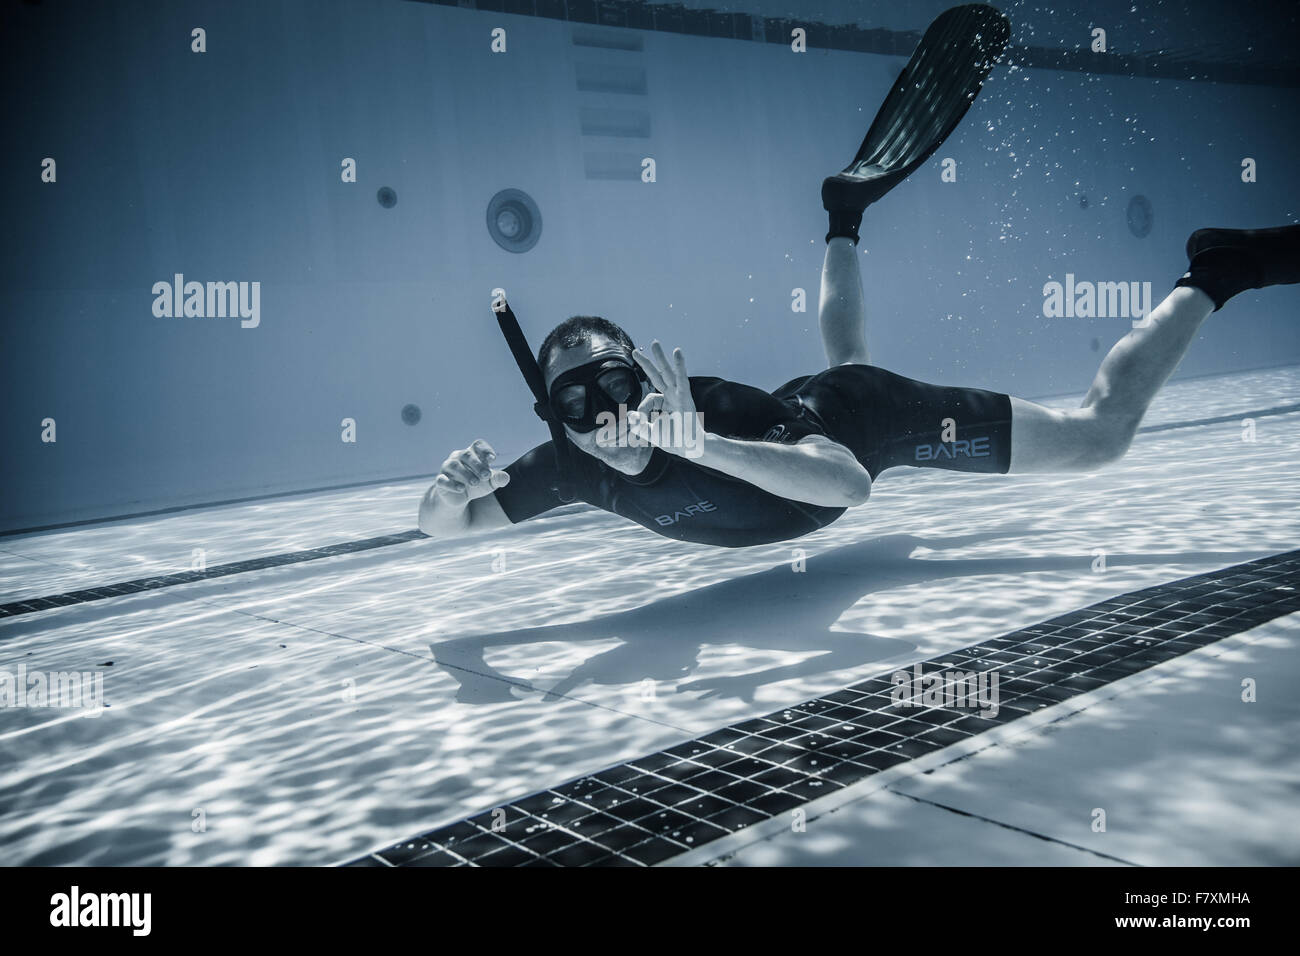 Montreal, Kanada - Mai 30. 2015. Offizieller AIDA Freediving Pool Wettbewerb nehmen Platz in den Parc Jean-Drapeau Olympiabecken. Sicherheit-Mitarbeiter, die Spaß unter Wasser zwischen zwei Aufführungen. Stockfoto